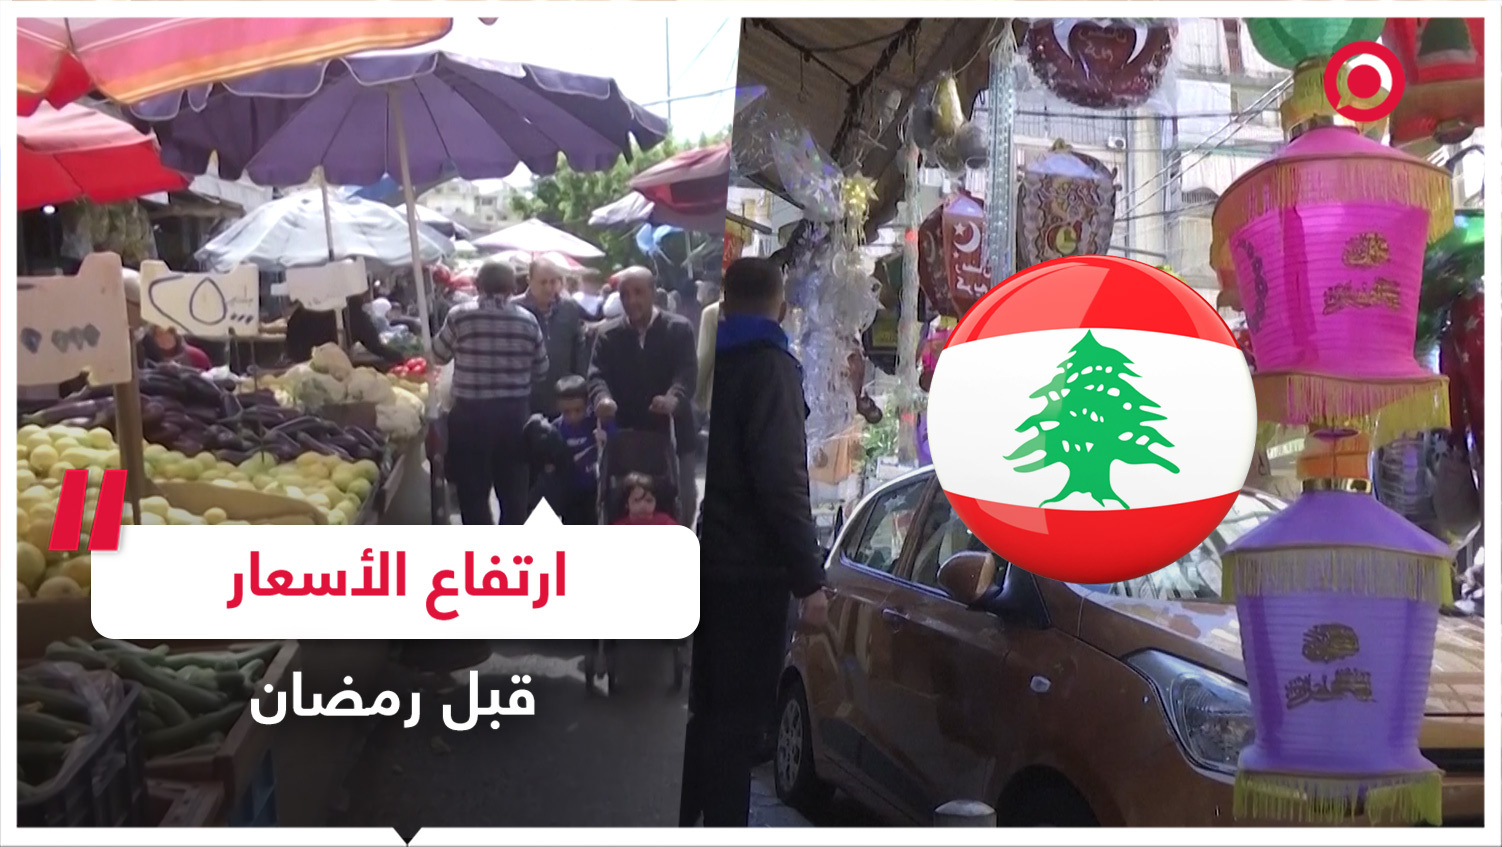 الأسواق في العاصمة اللبنانية قبل أيام من شهر رمضان المبارك